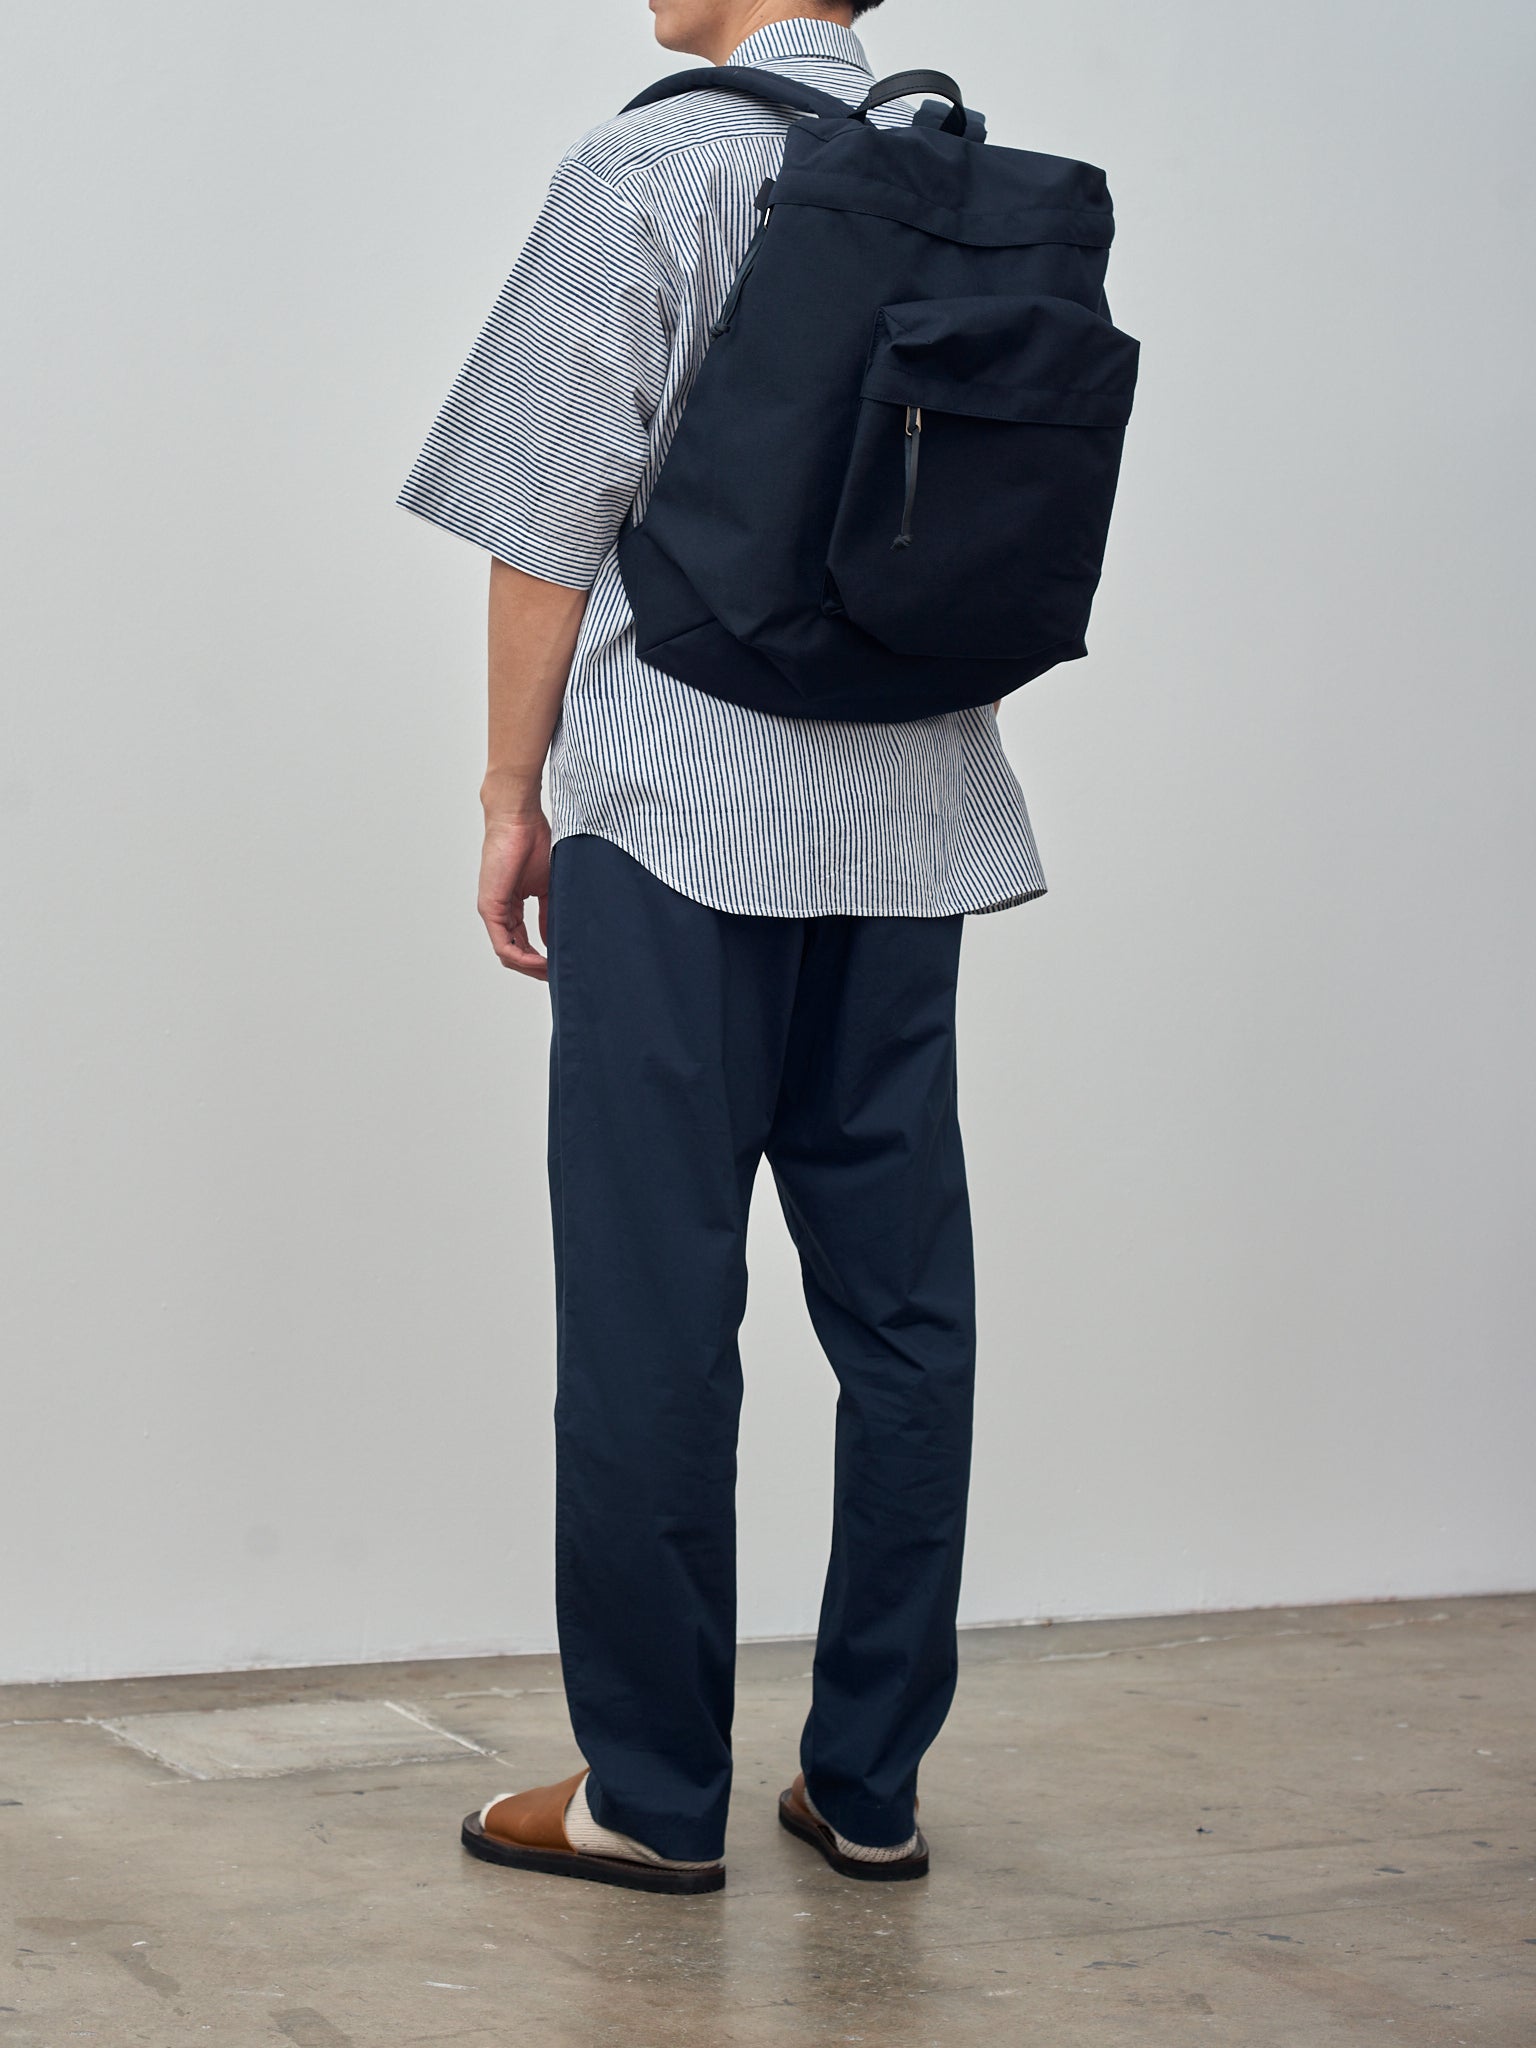 Namu Shop - Aeta Backpack TF M - Black